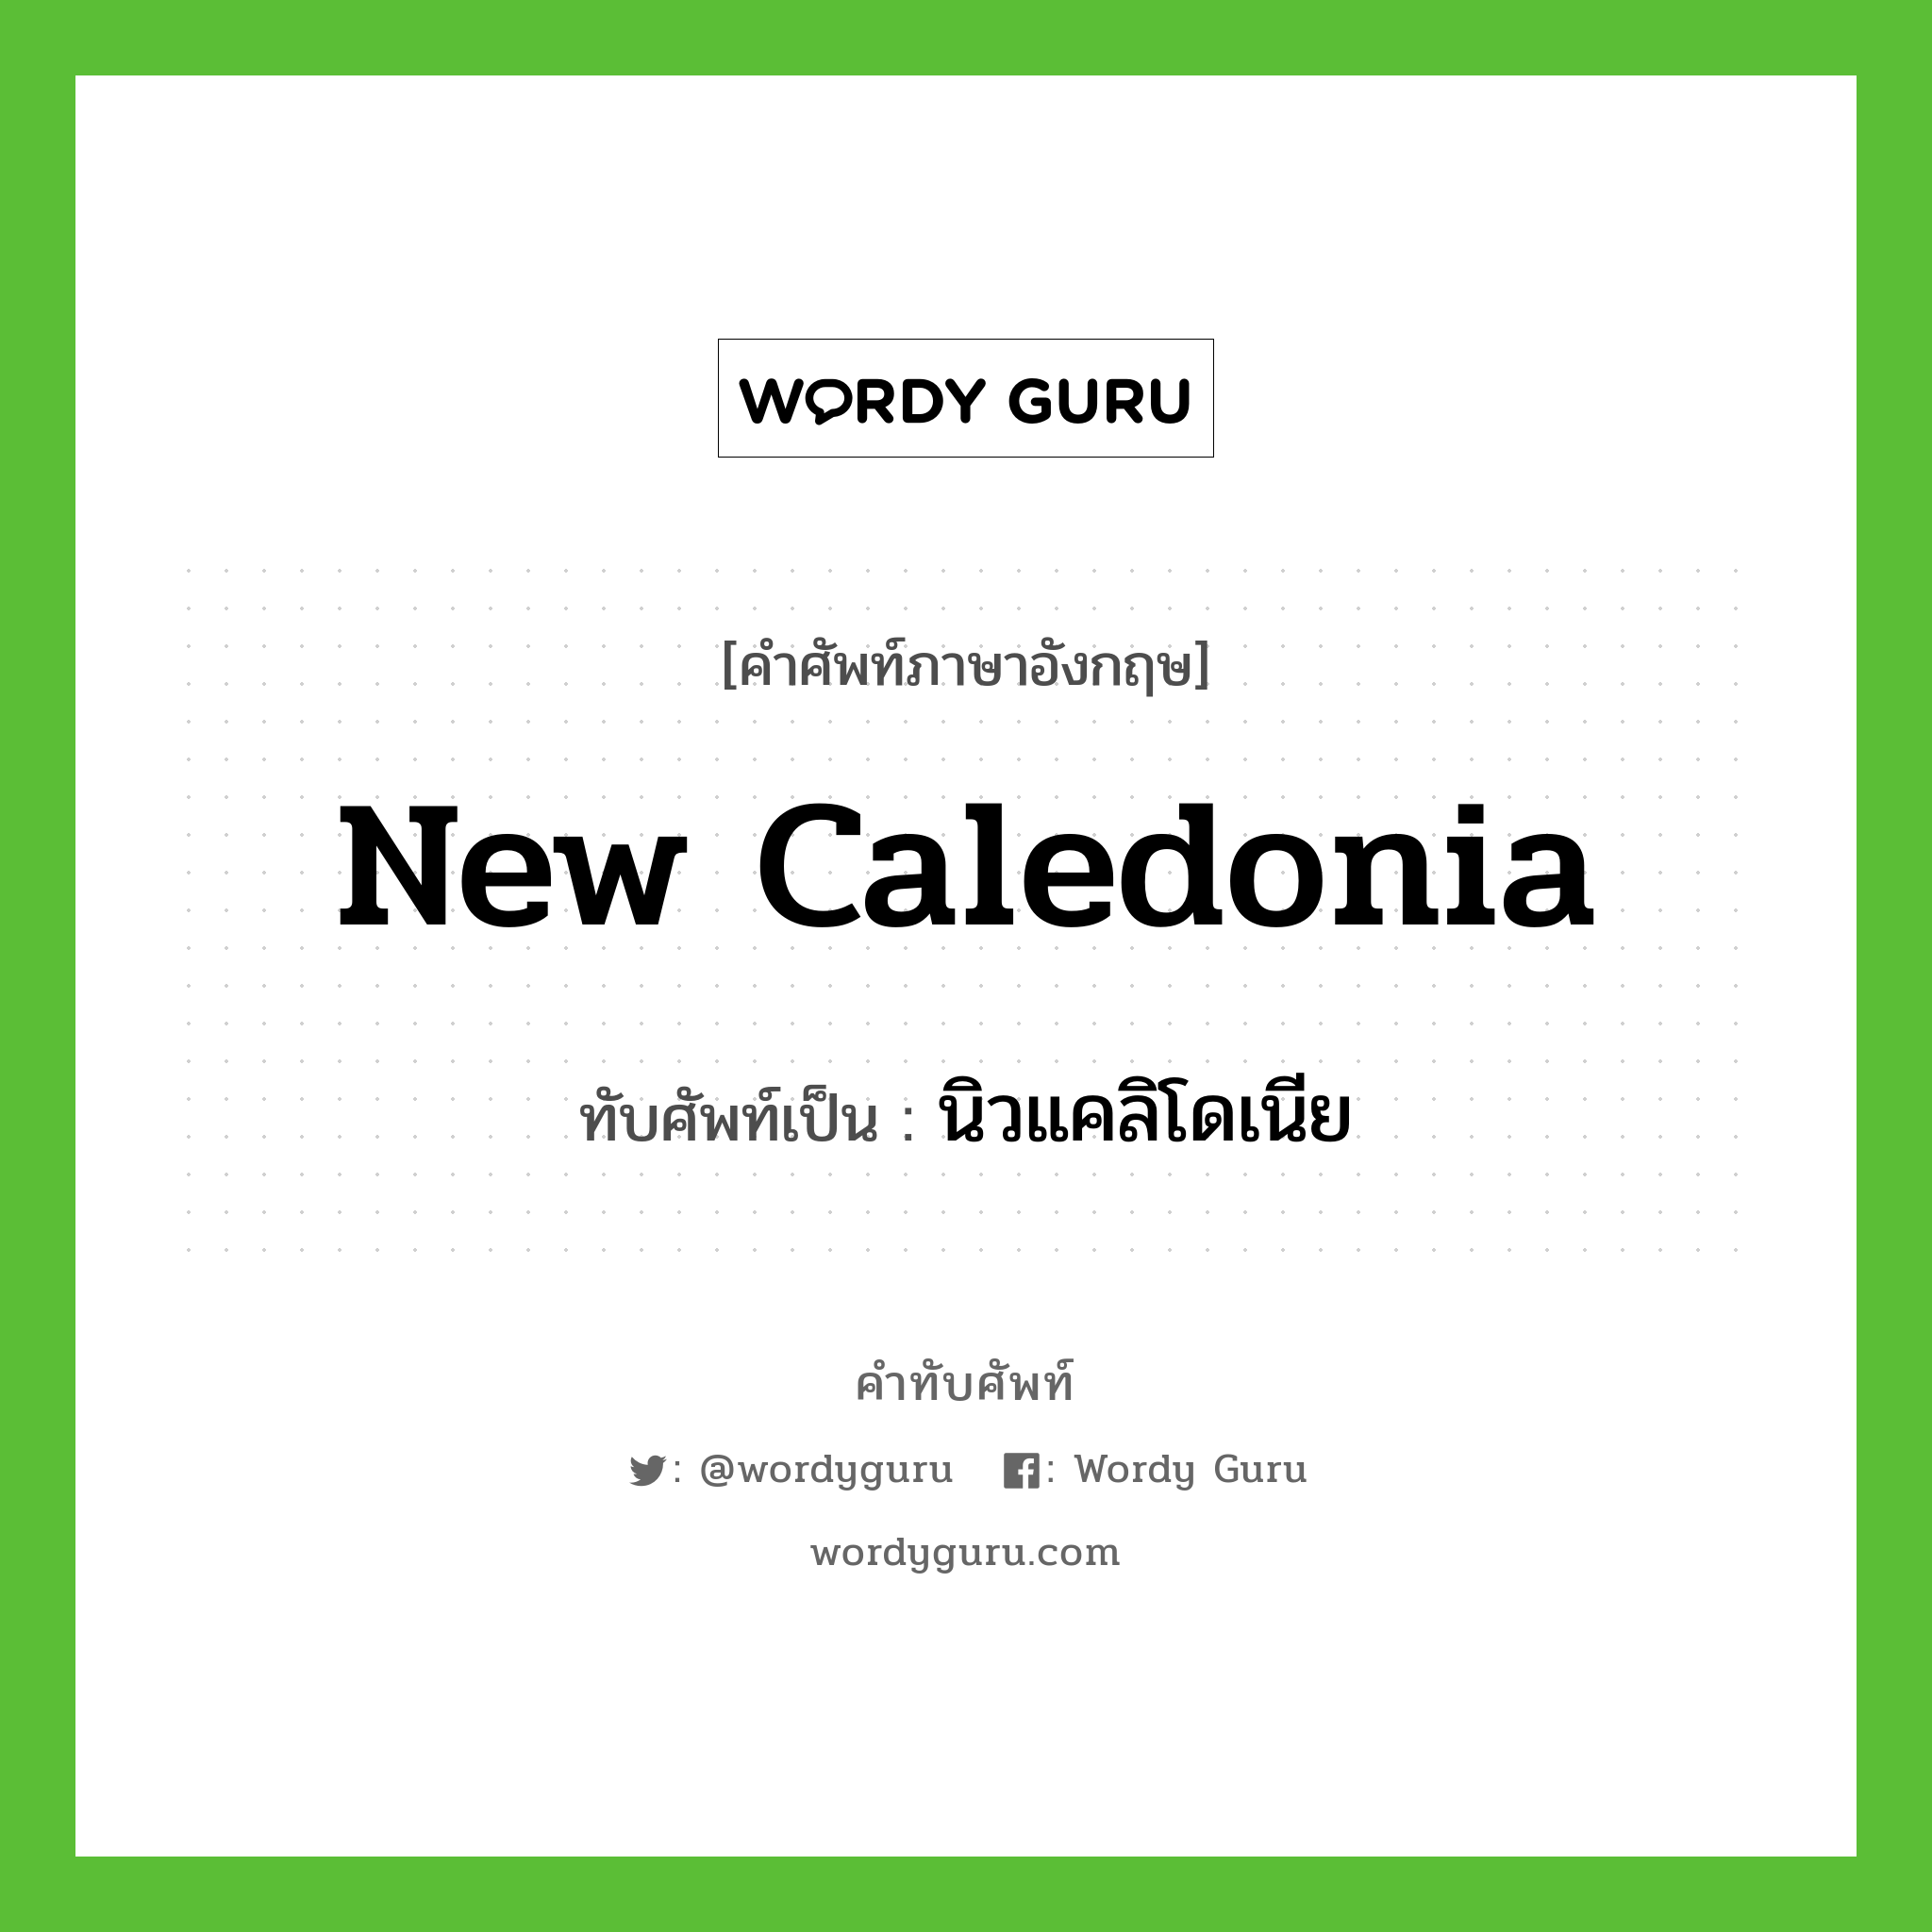 นิวแคลิโดเนีย เขียนอย่างไร?, คำศัพท์ภาษาอังกฤษ นิวแคลิโดเนีย ทับศัพท์เป็น New Caledonia